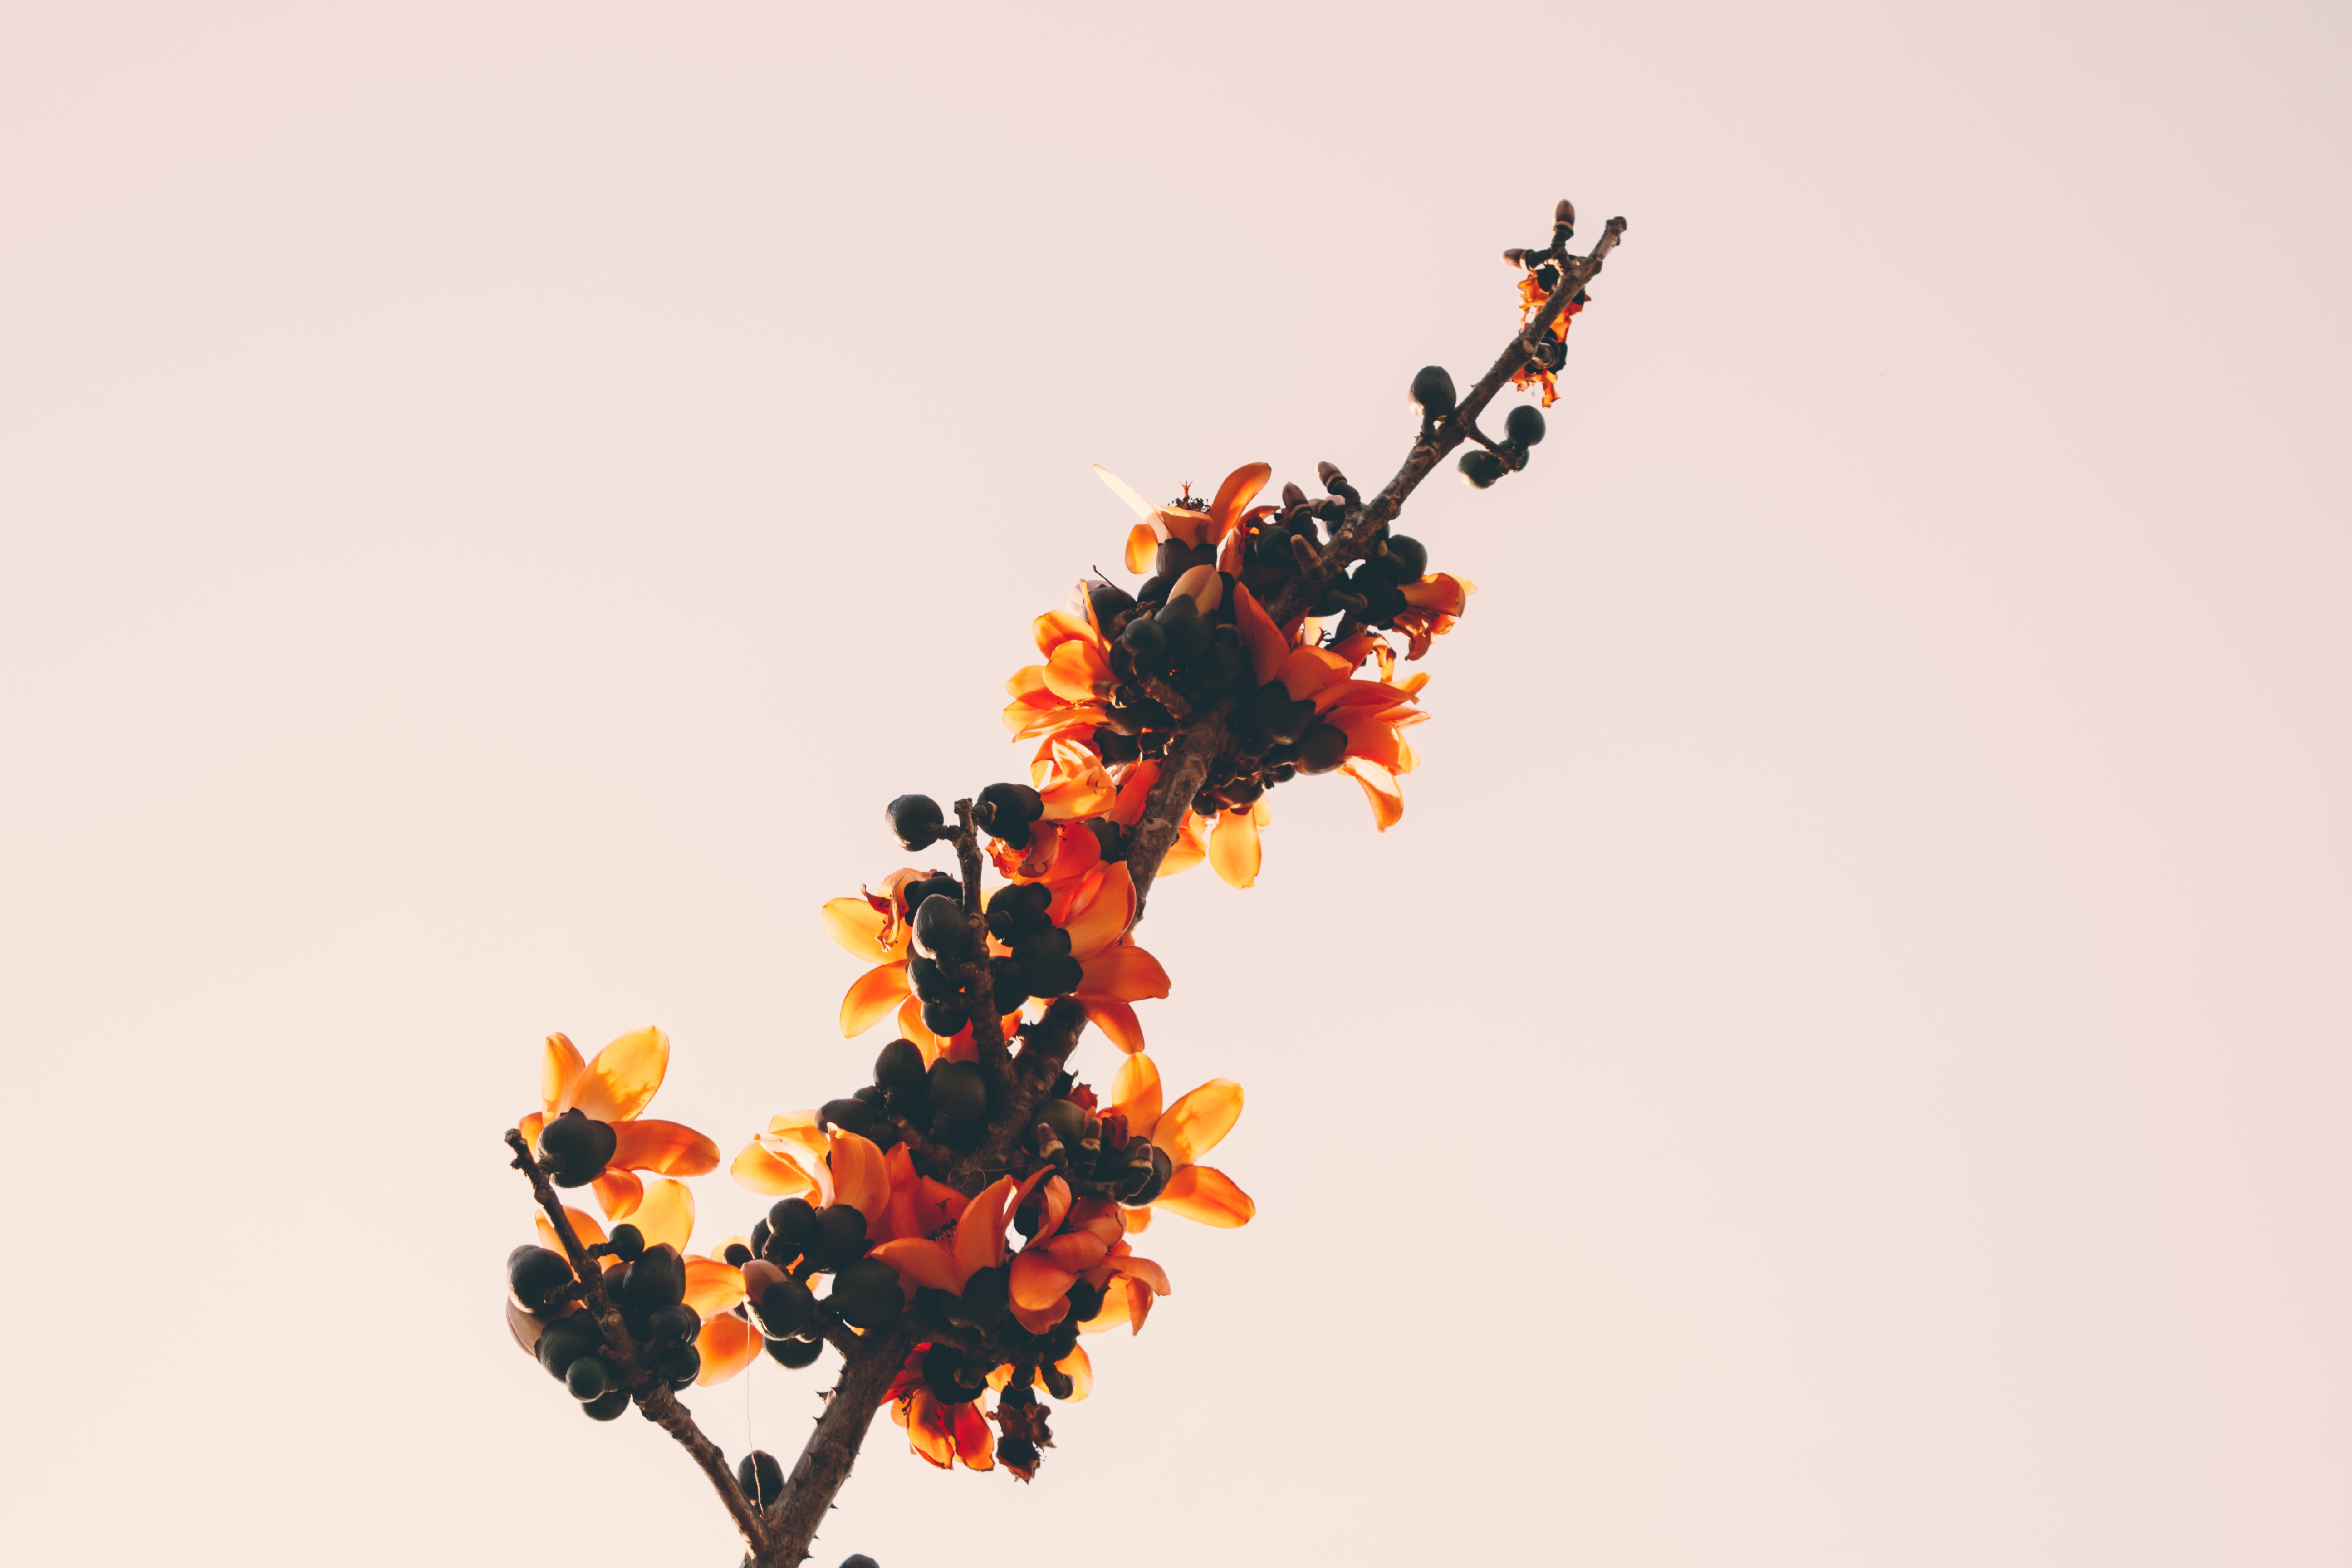 Close-up of orange flowers photo